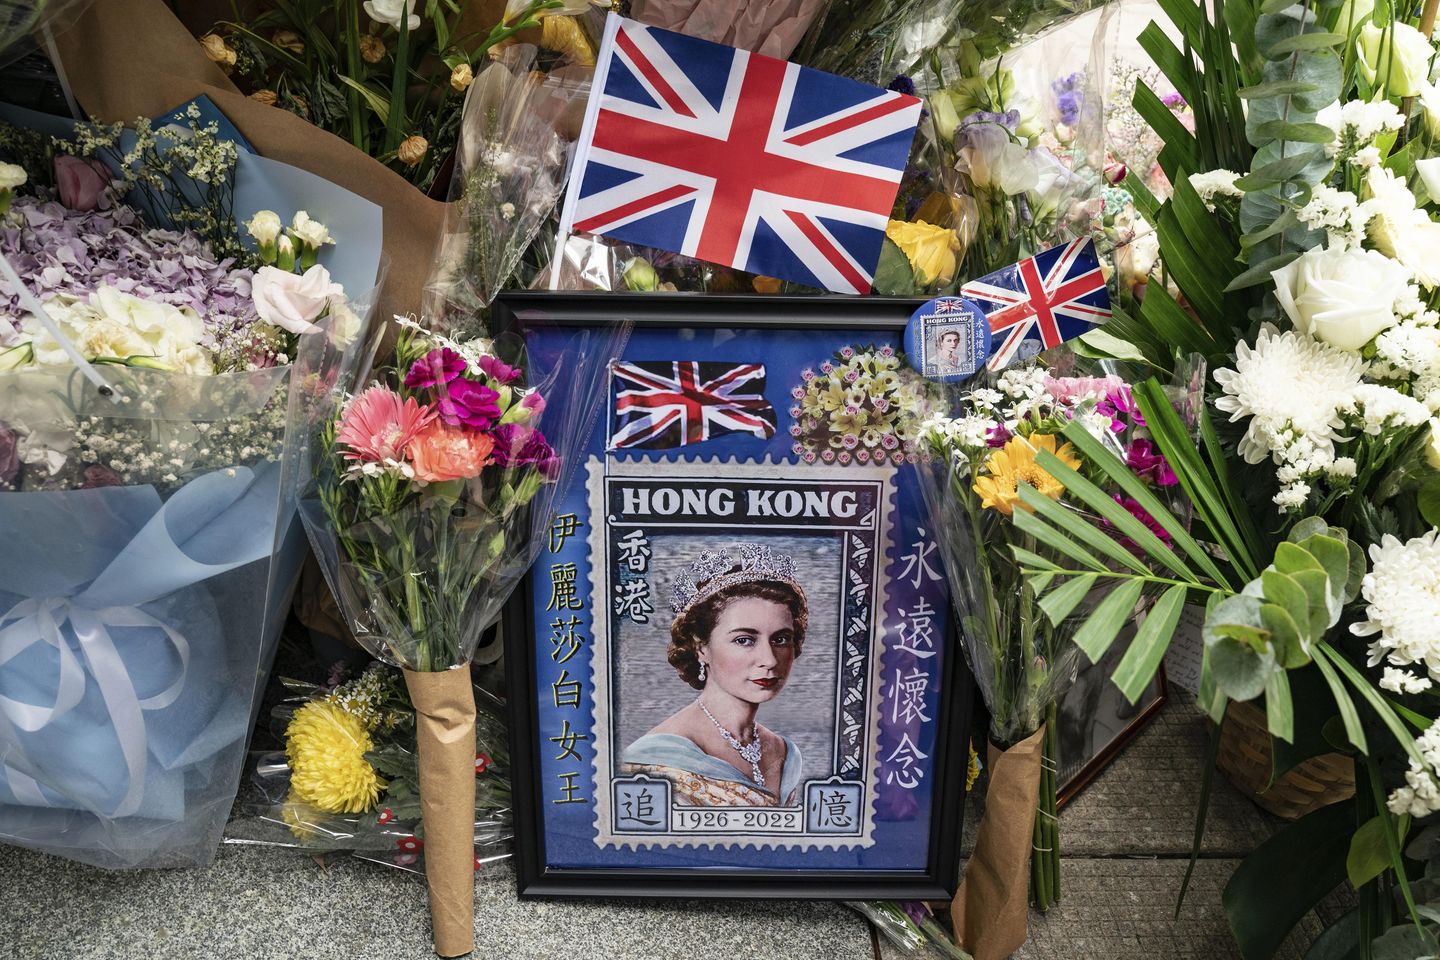 Hong Kong'da, Kraliçe II. Elizabeth'in acısı, muhalefet olarak ikiye katlanıyor